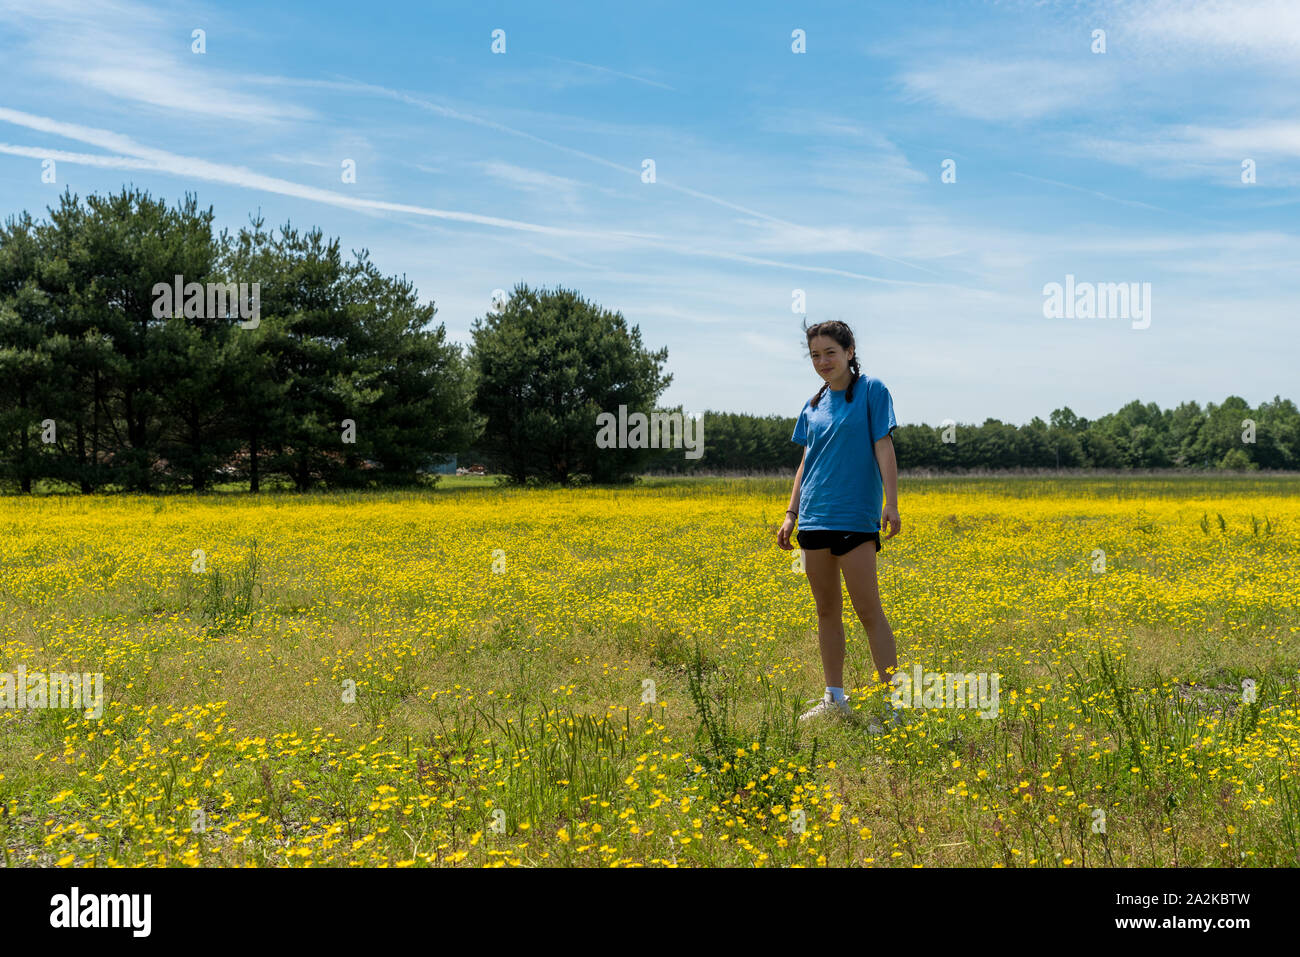 Teen ragazza in pantaloncini corti in piedi nel campo di grandi dimensioni con fiori di colore giallo e di alberi in background Foto Stock